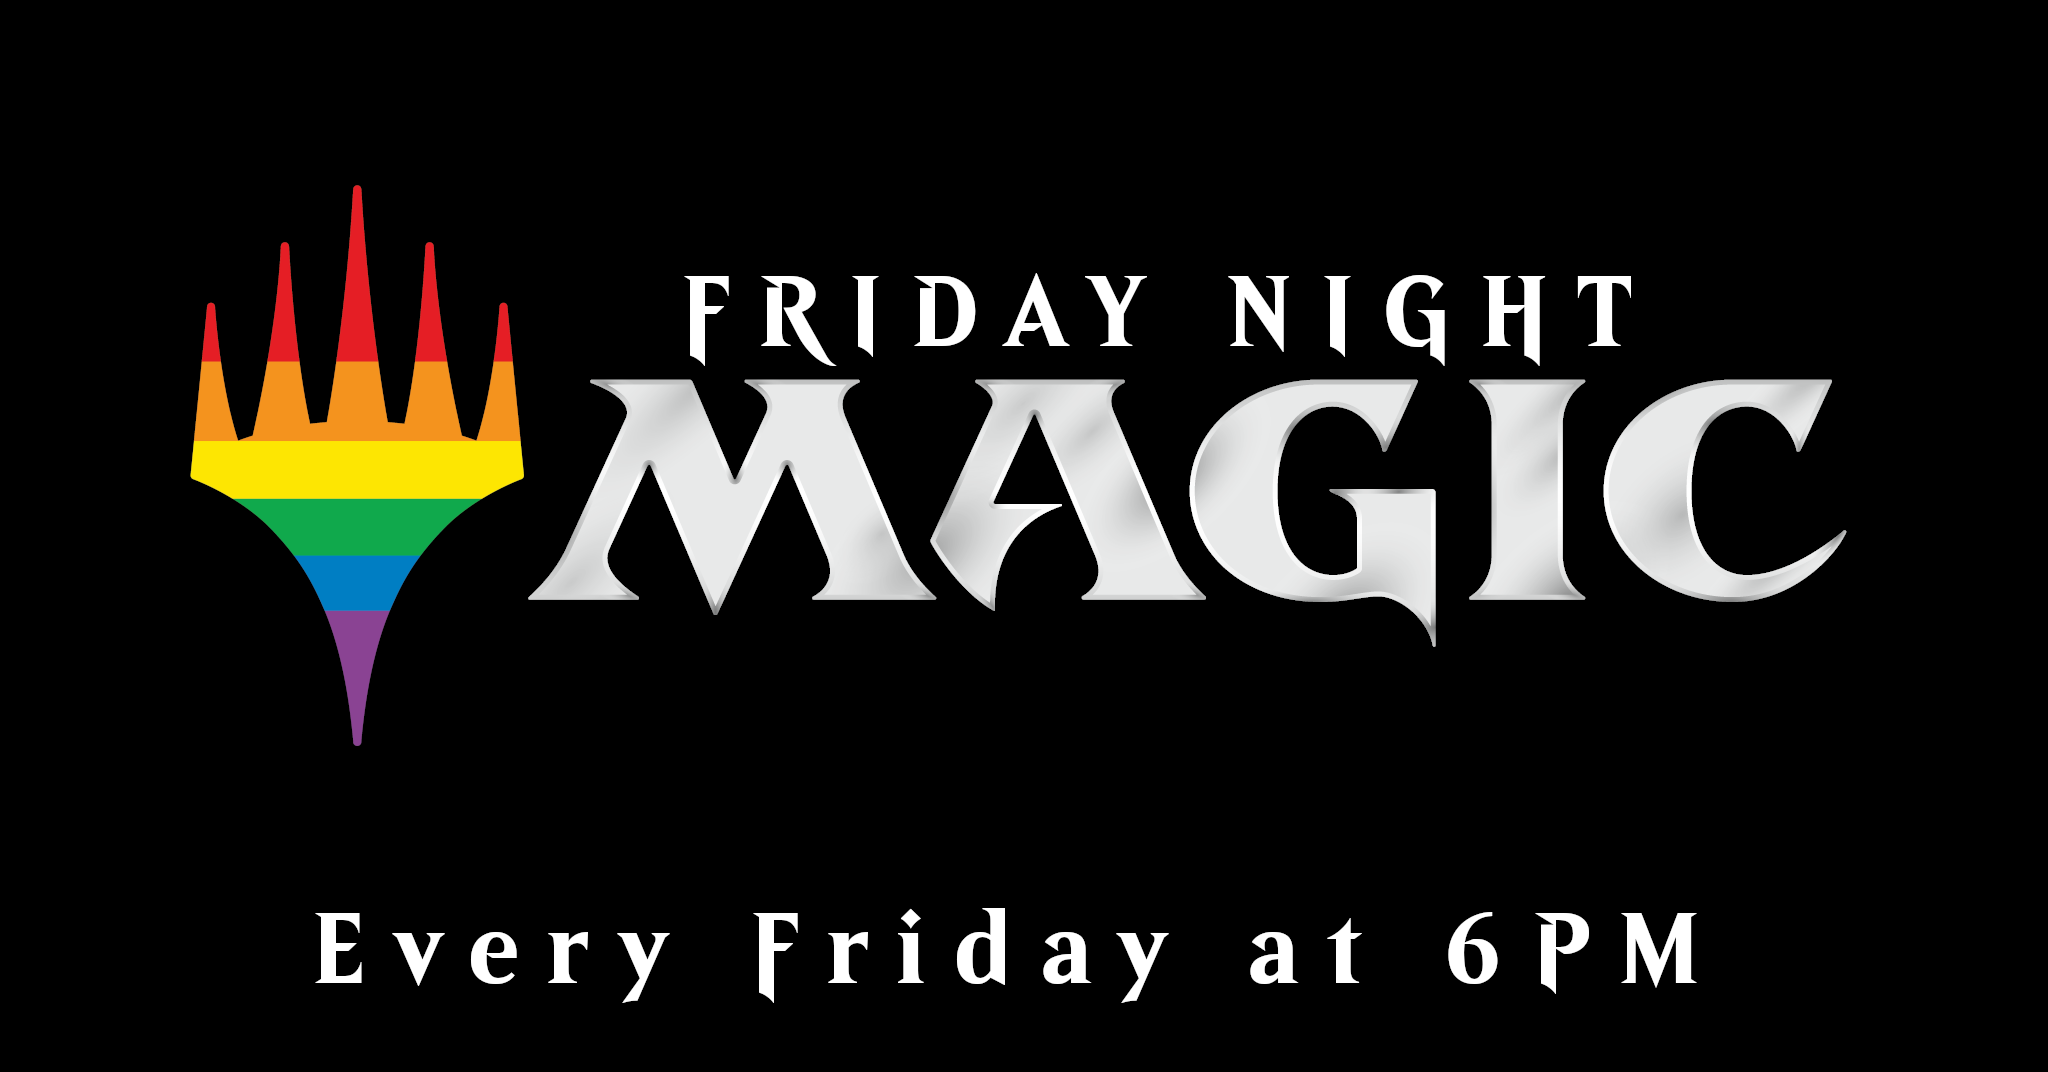 Friday Night Magic Every Friday at 6pm